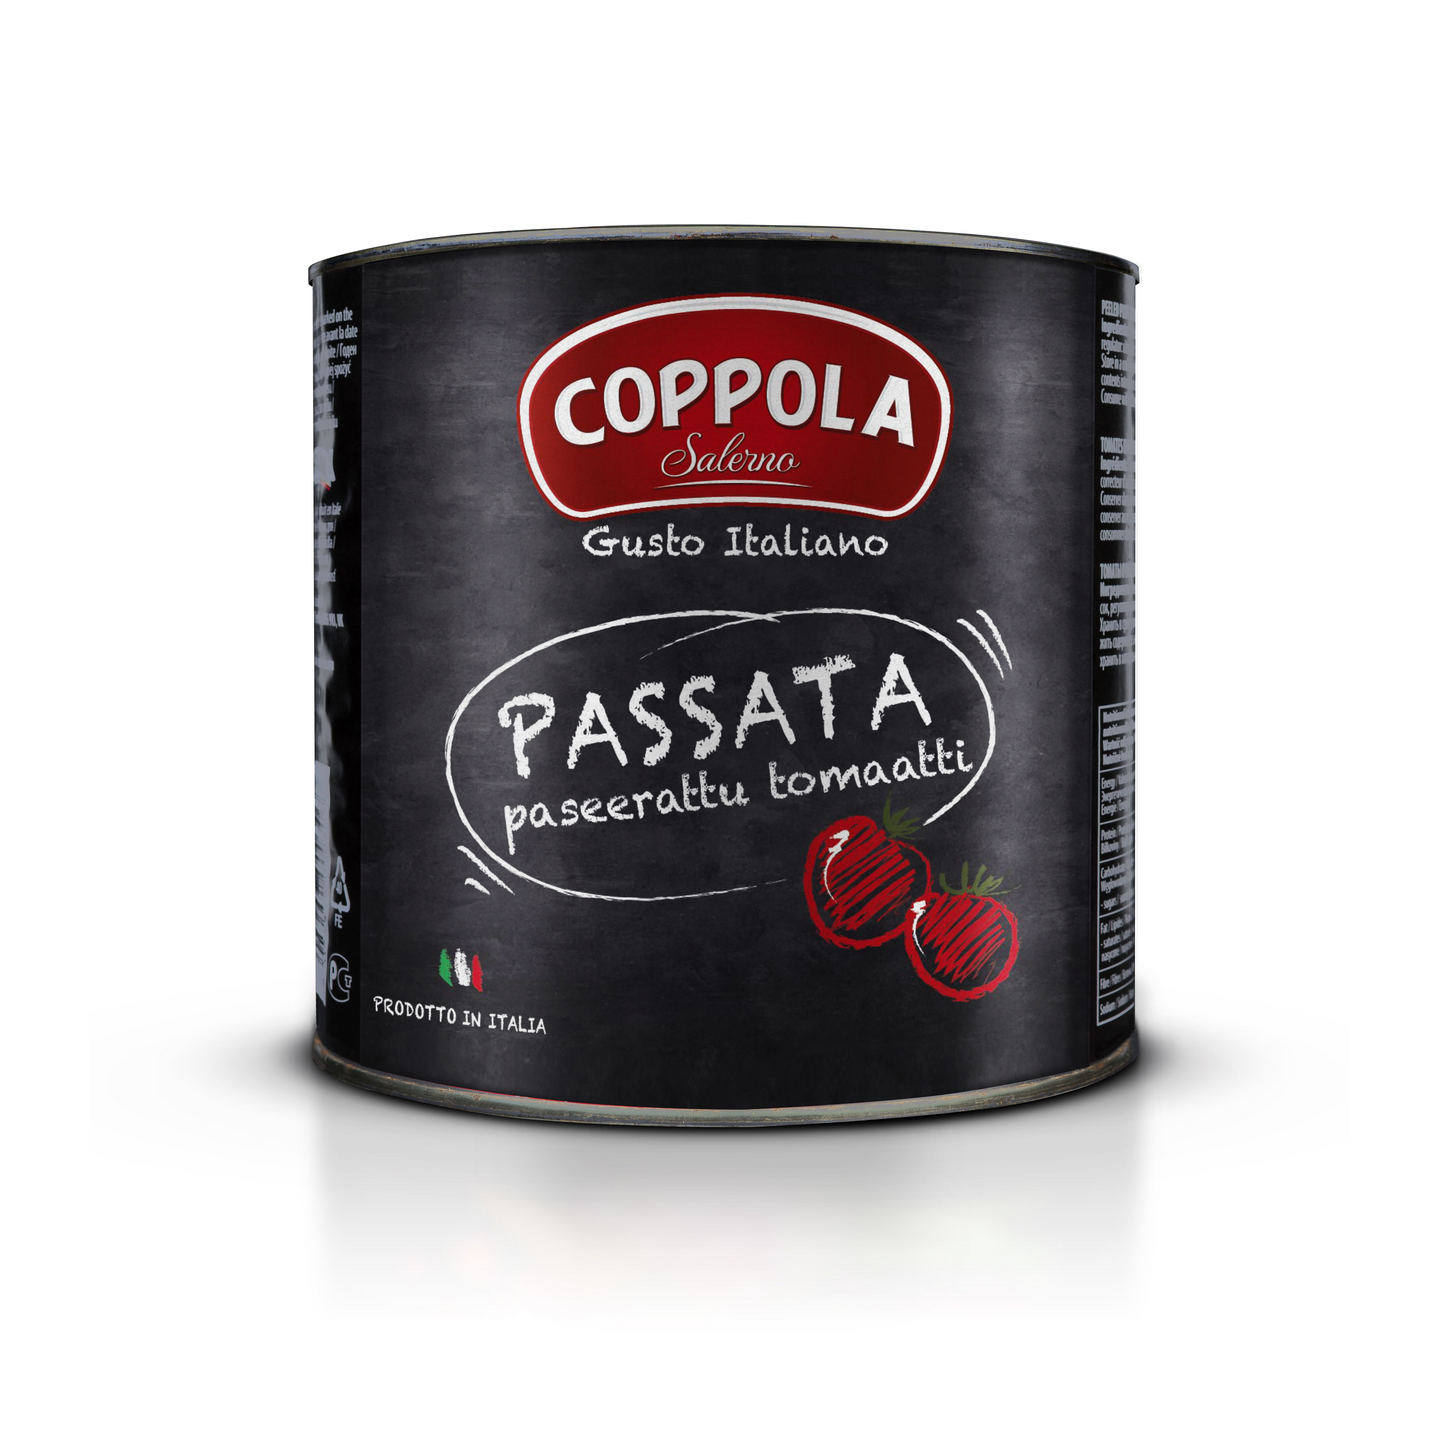 Coppola Passata paseerattu tomaatti 2,5kg